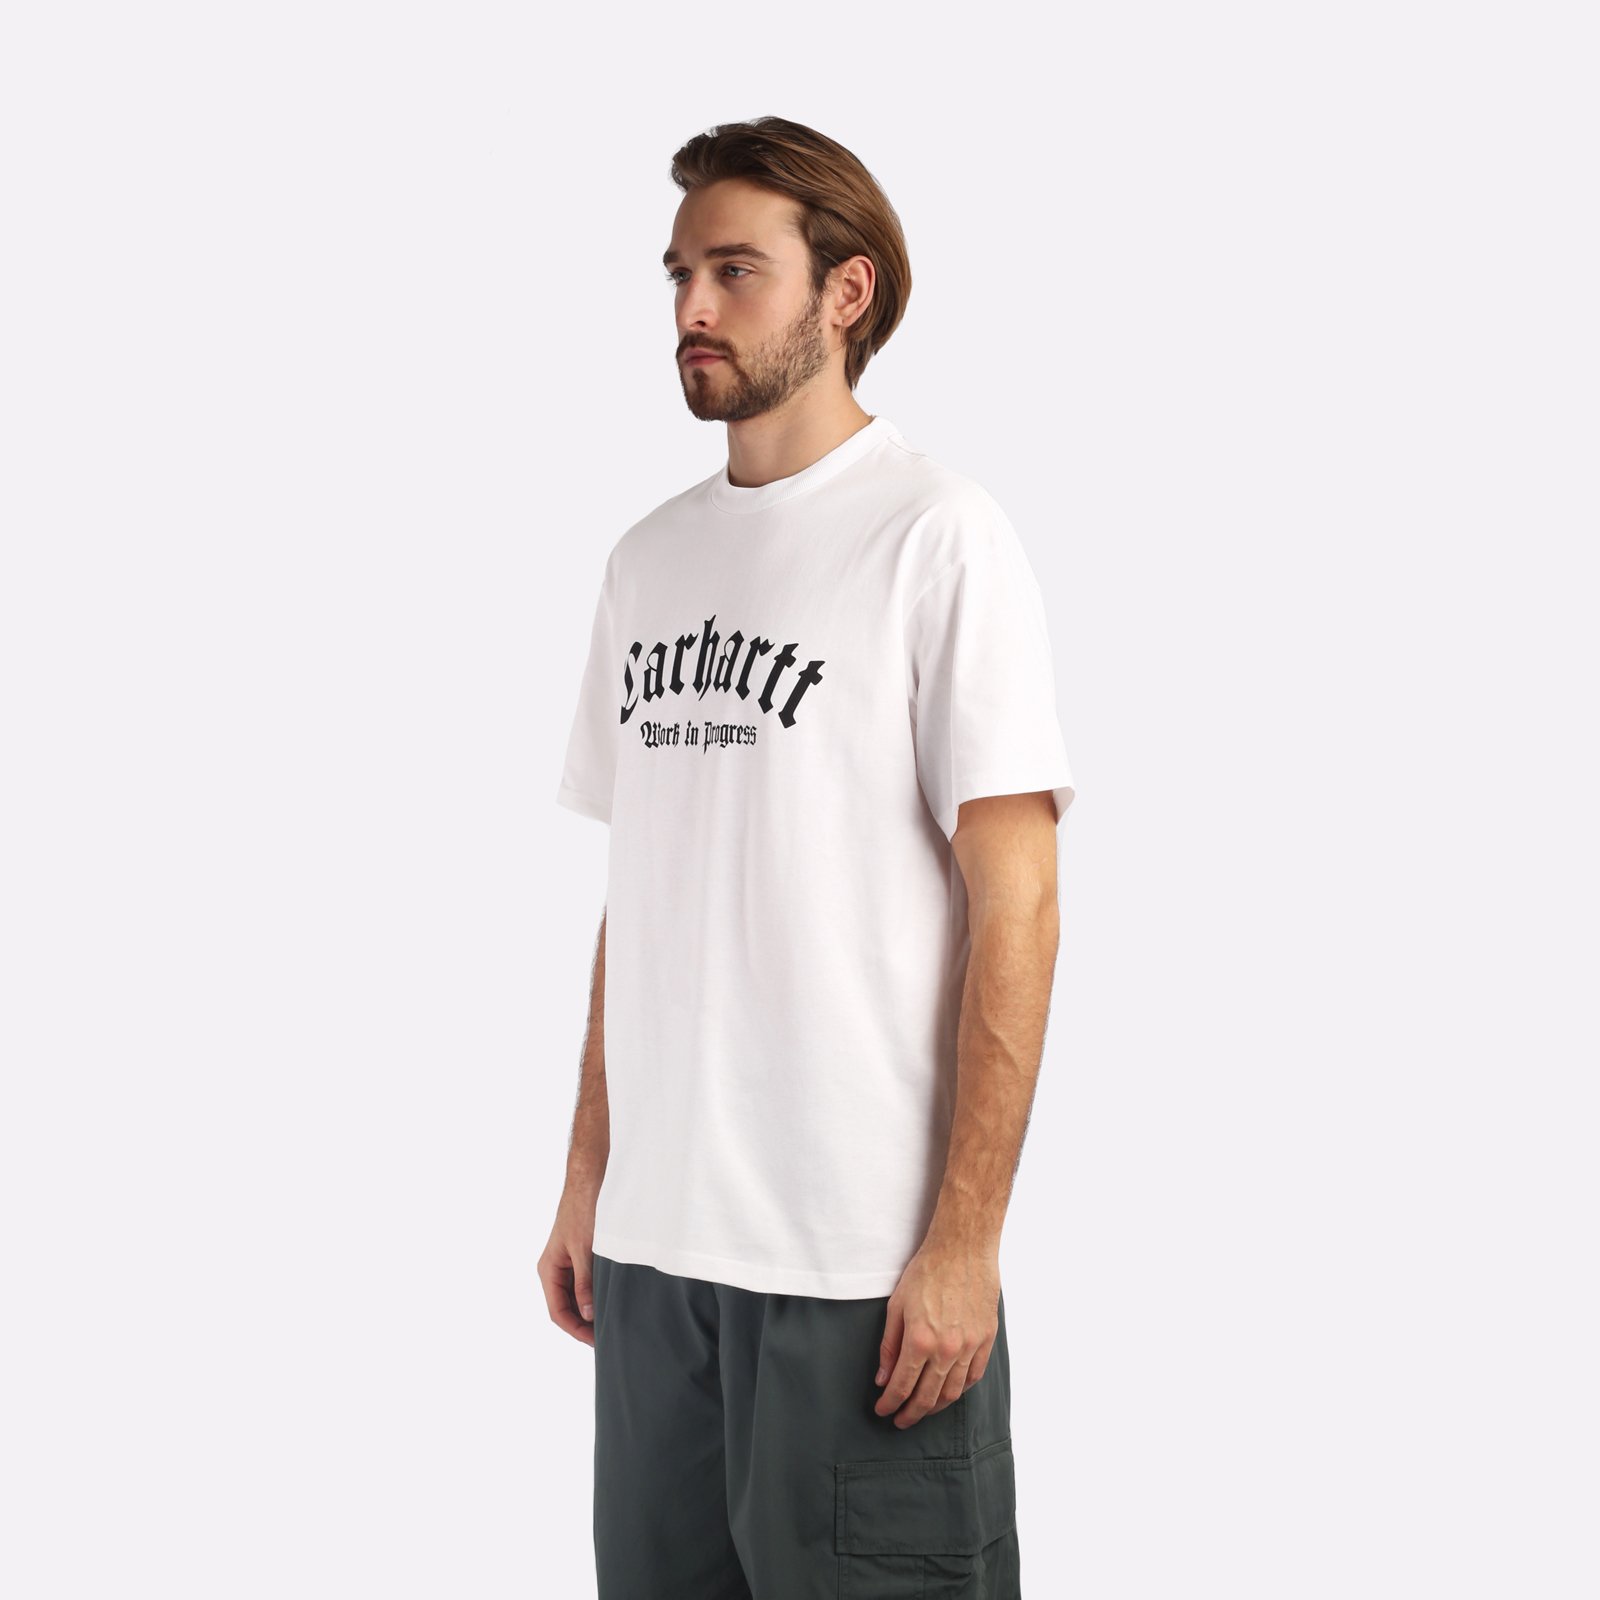 мужская футболка Carhartt WIP S/S Onyx T-Shirt  (I032875-white/black)  - цена, описание, фото 3